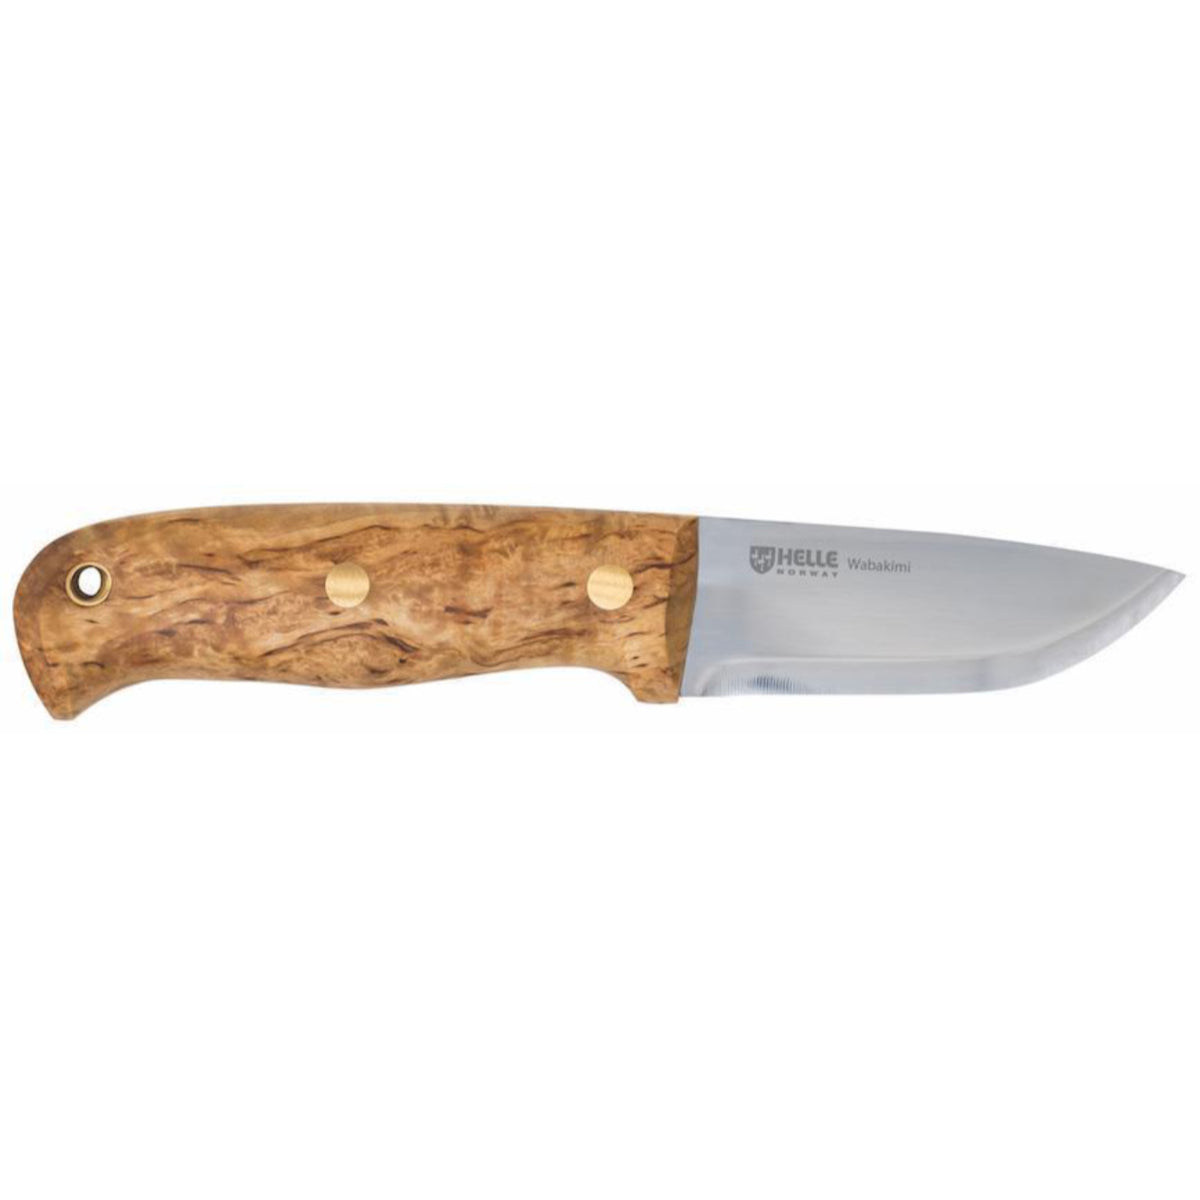 Helle Wabakimi bushcraft knife